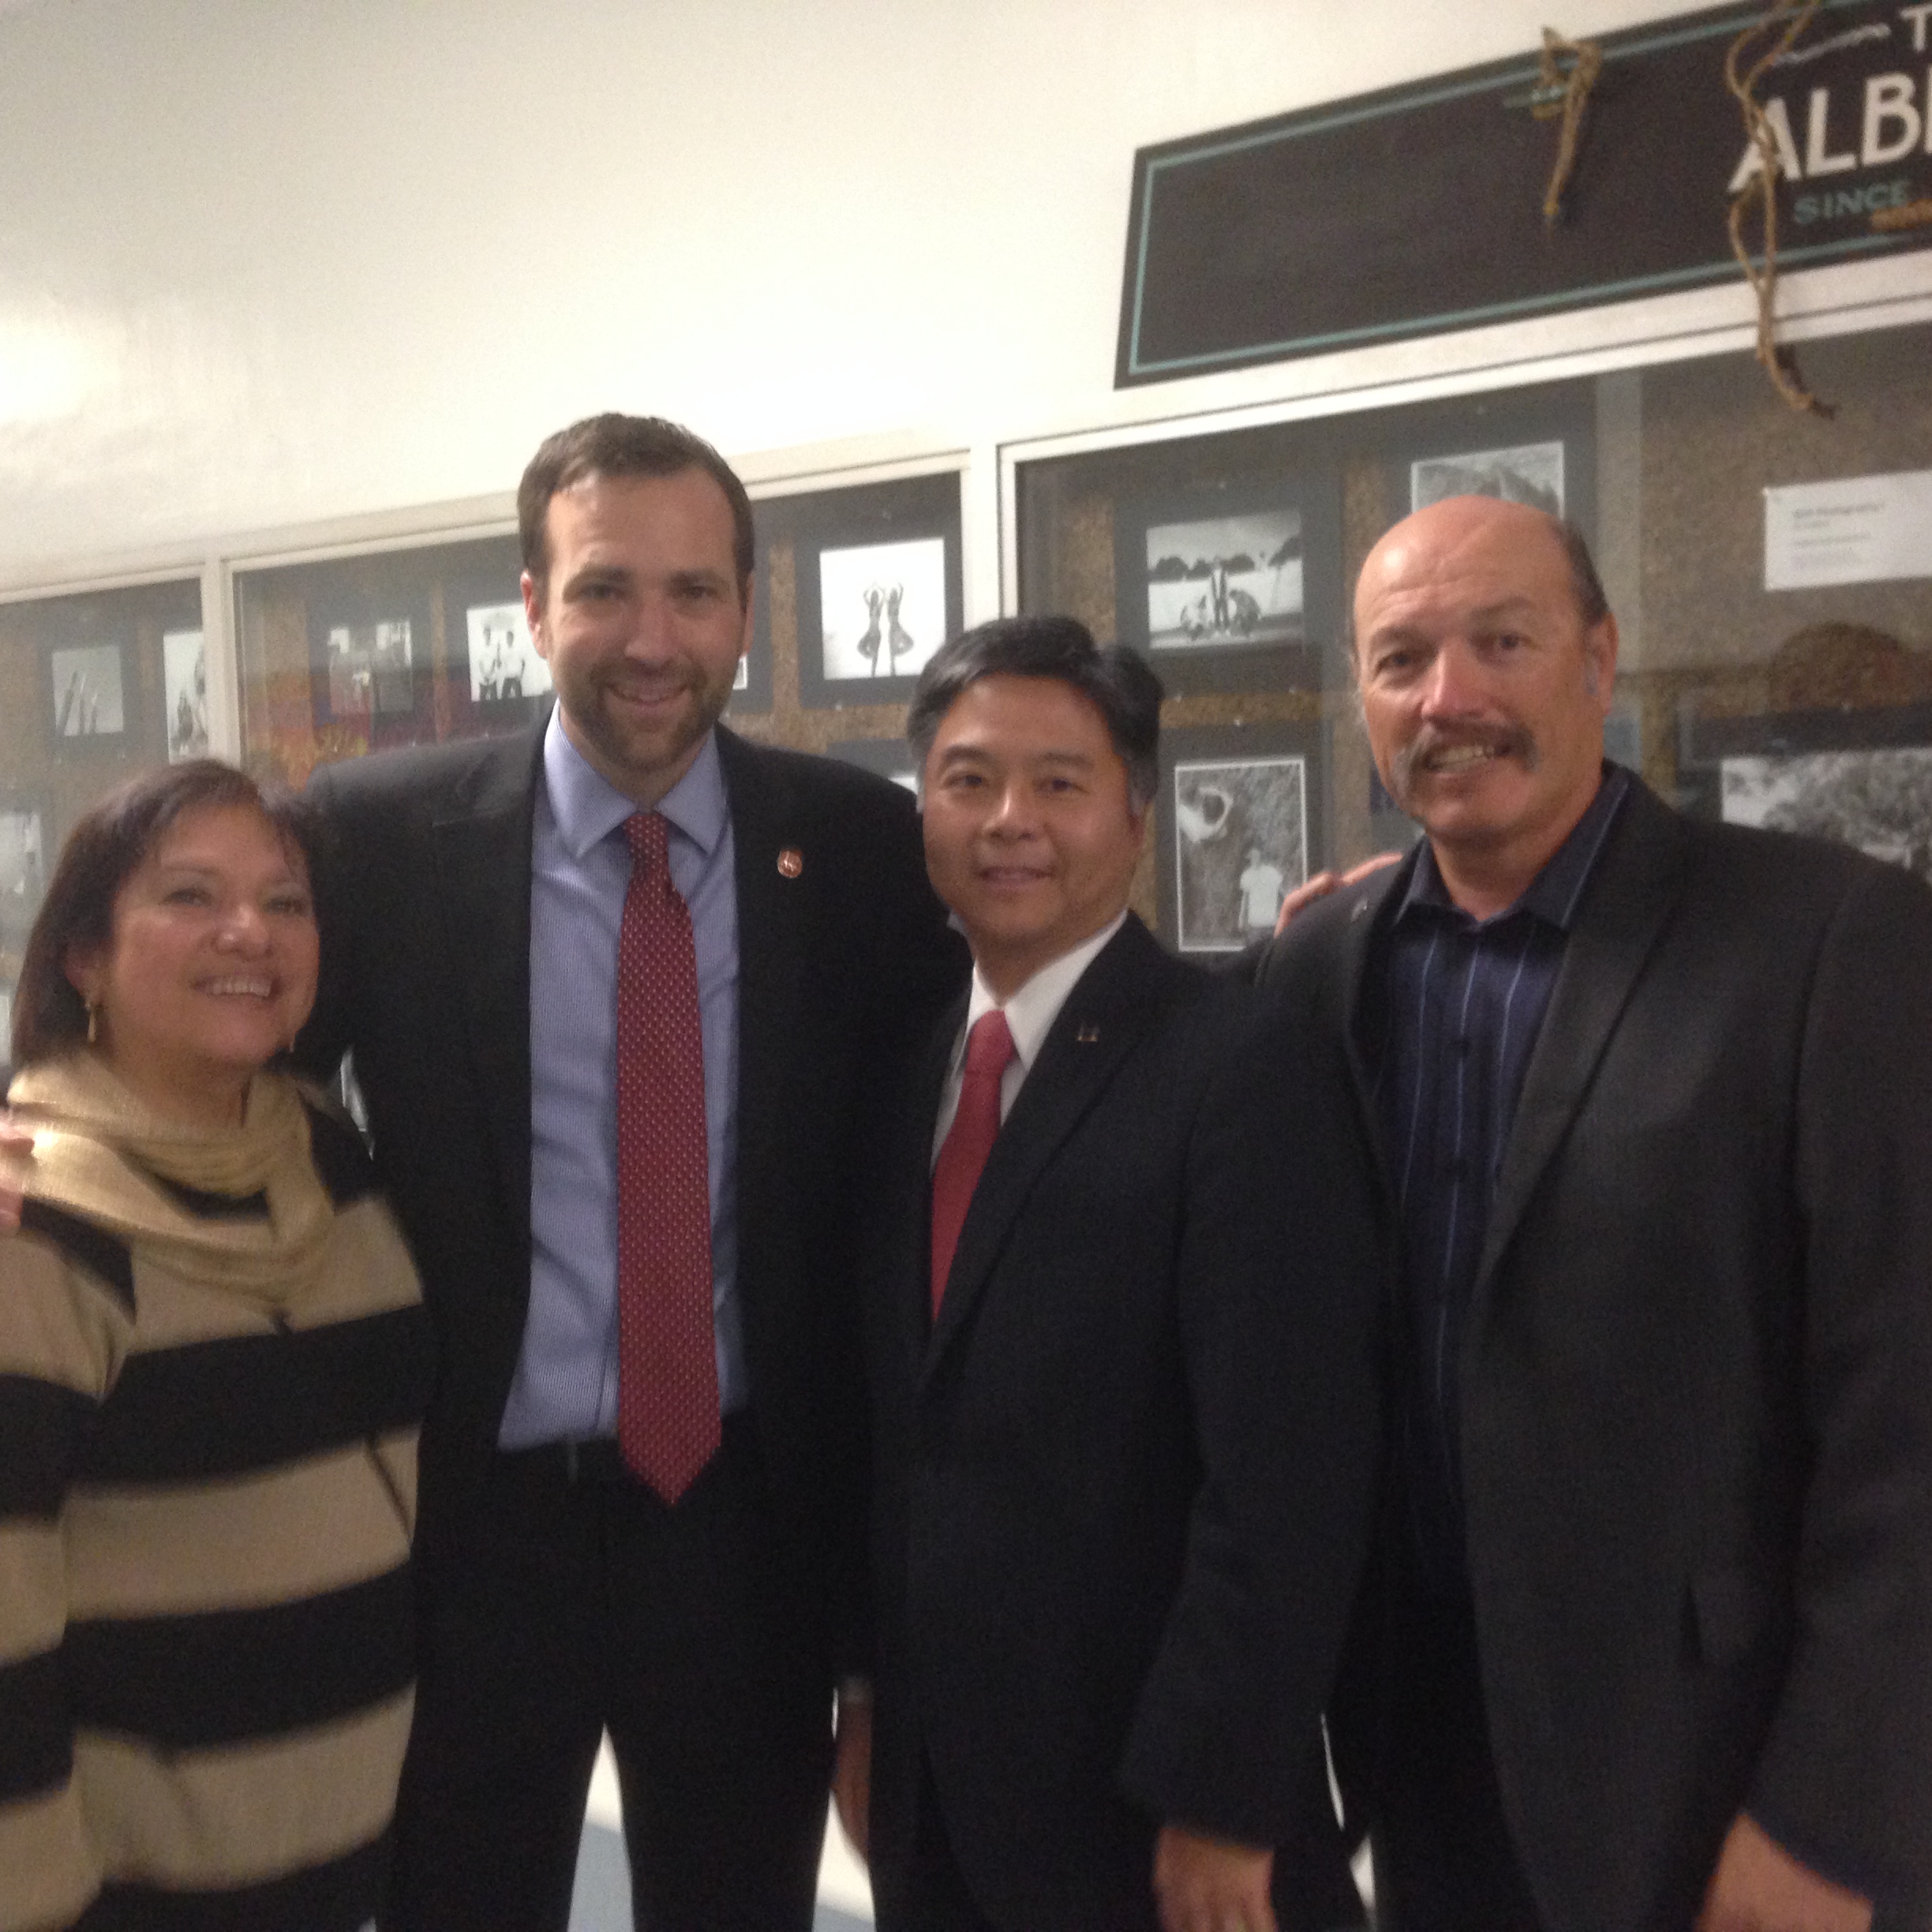 Tony with School Board member Maria Leon Vazquez, Senator Ben Allen, and Congressman Ted Lieu